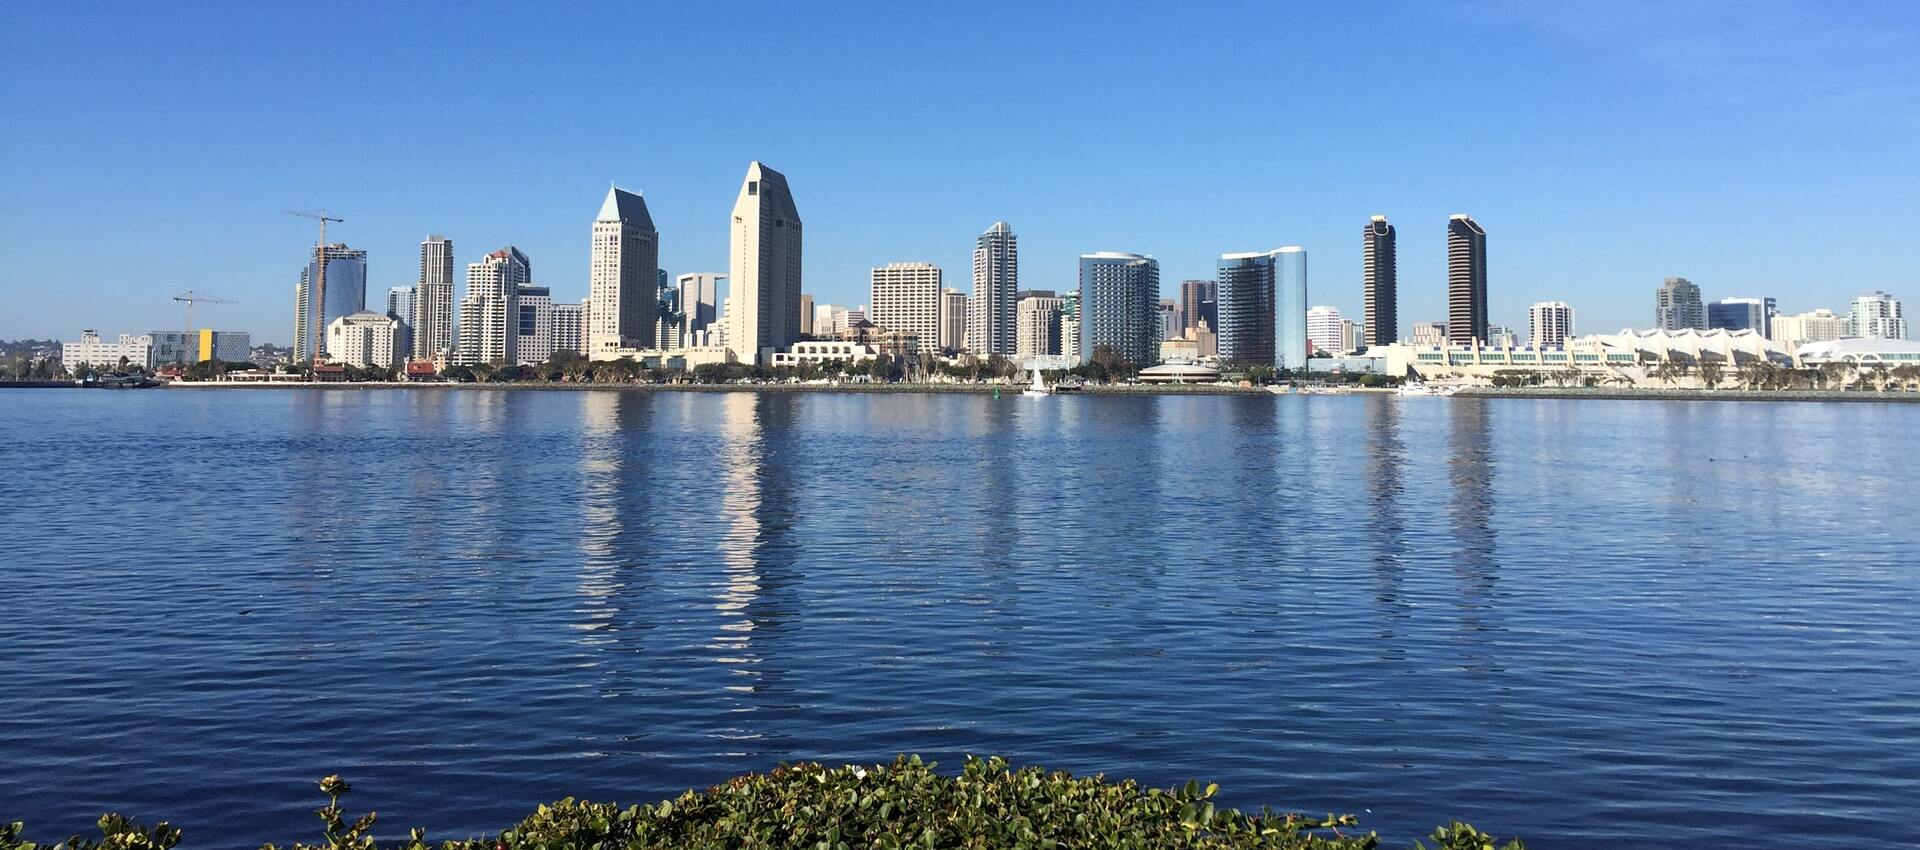 San Diego city skyline as viewed from Coronado